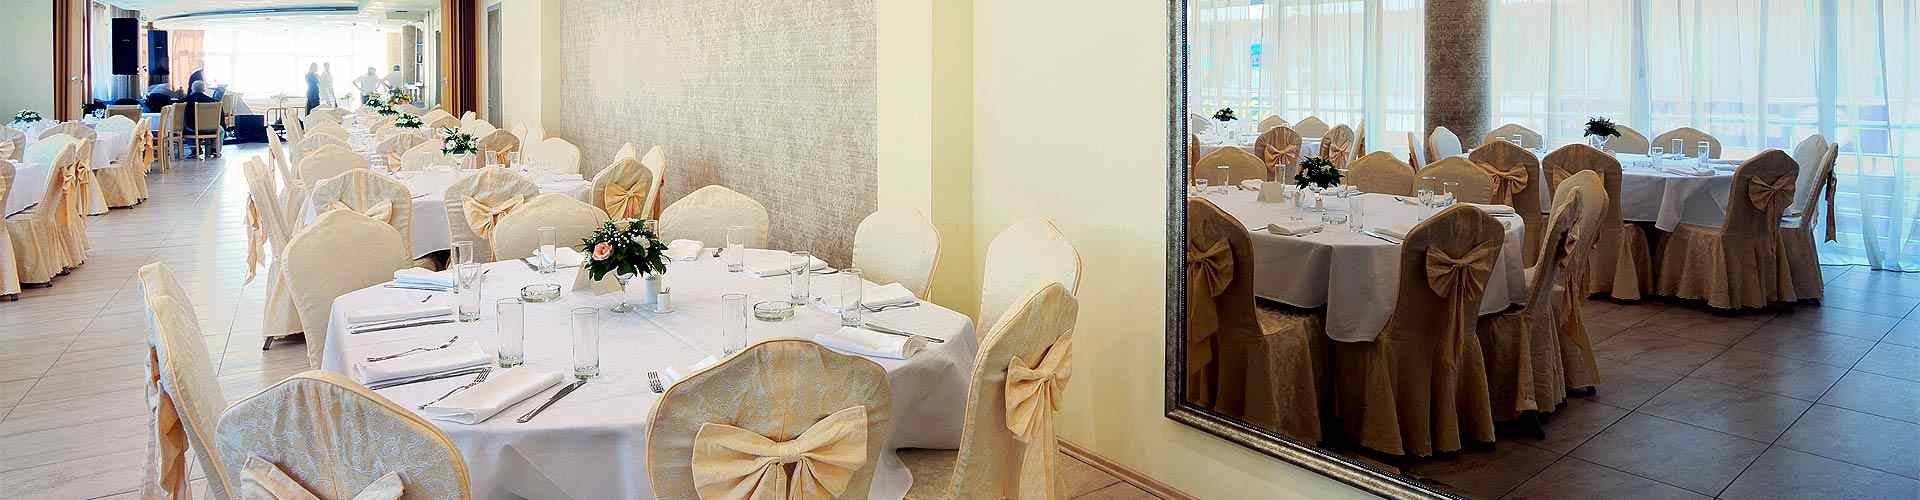 Restaurantes para bodas 2020 en Iglesias